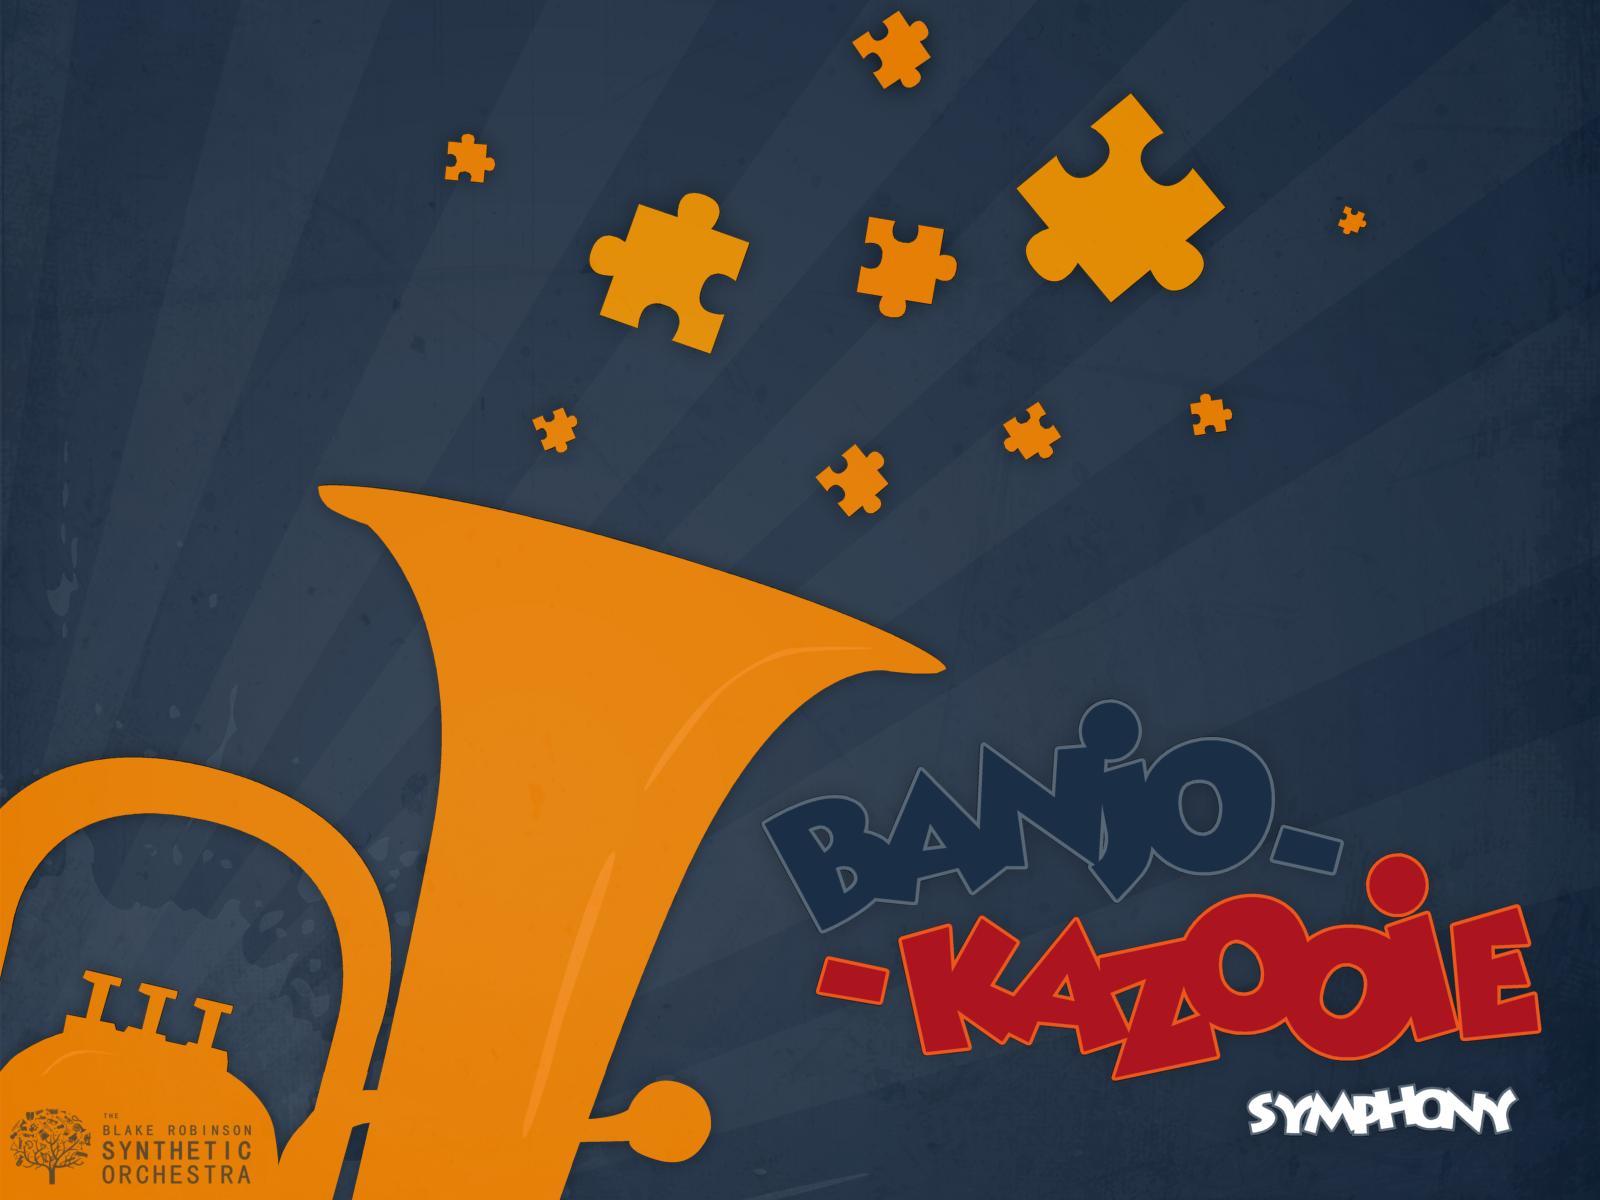 Banjo Kazooie Symphony